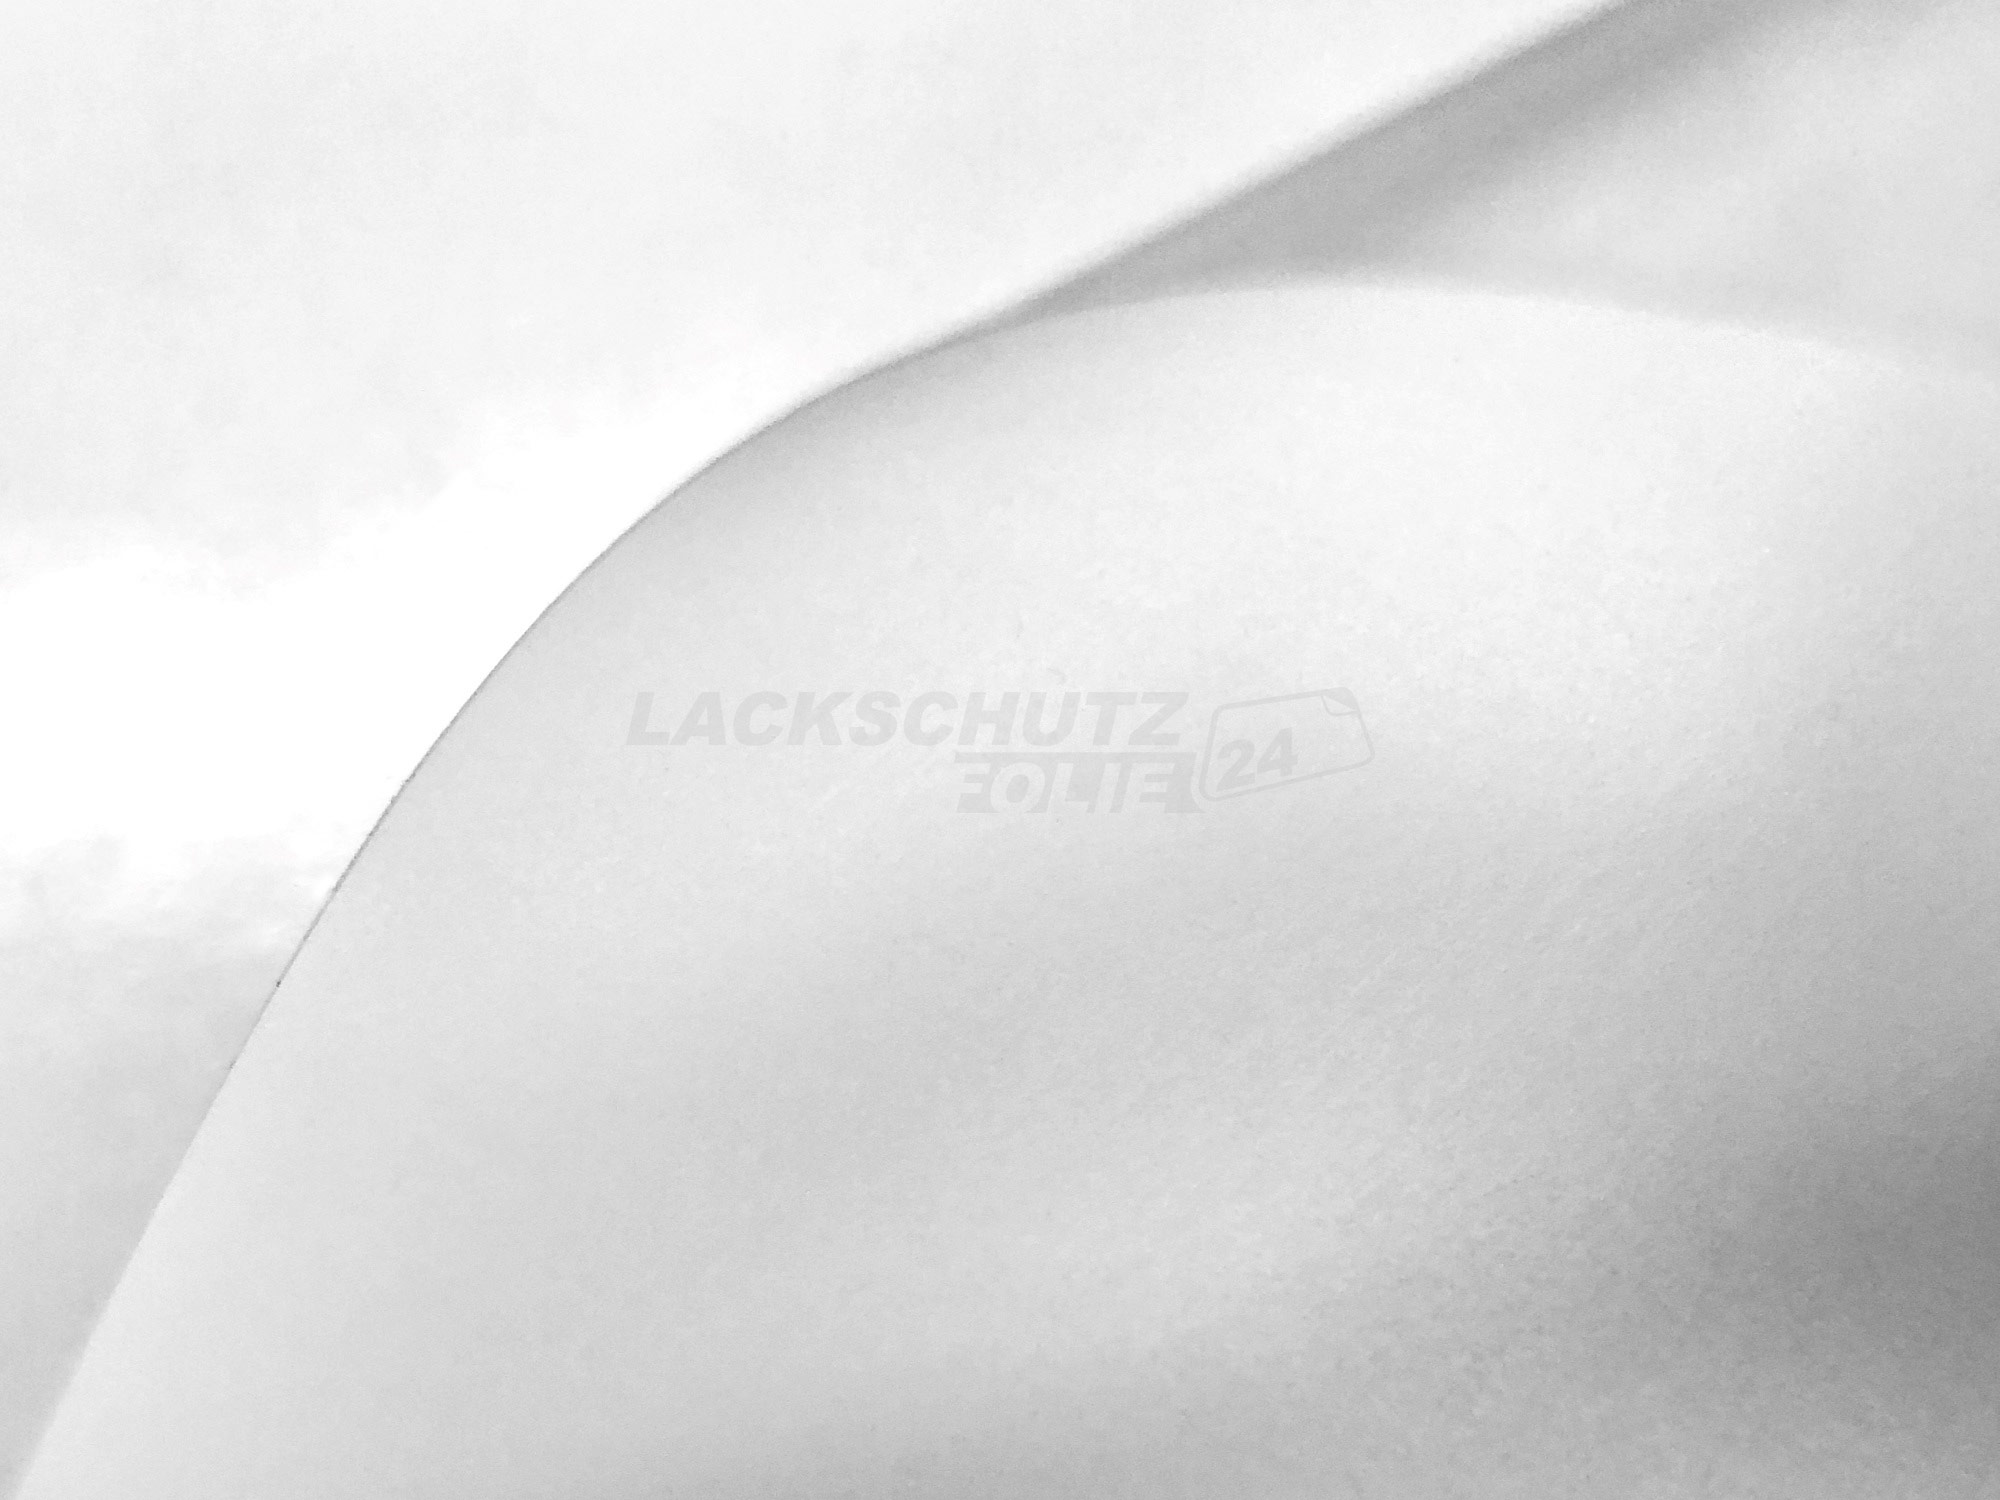 Ladekantenschutzfolie - Transparent Glatt MATT 110 µm stark  für Mercedes-Benz GLE Coupe Typ C167, ab BJ 2020